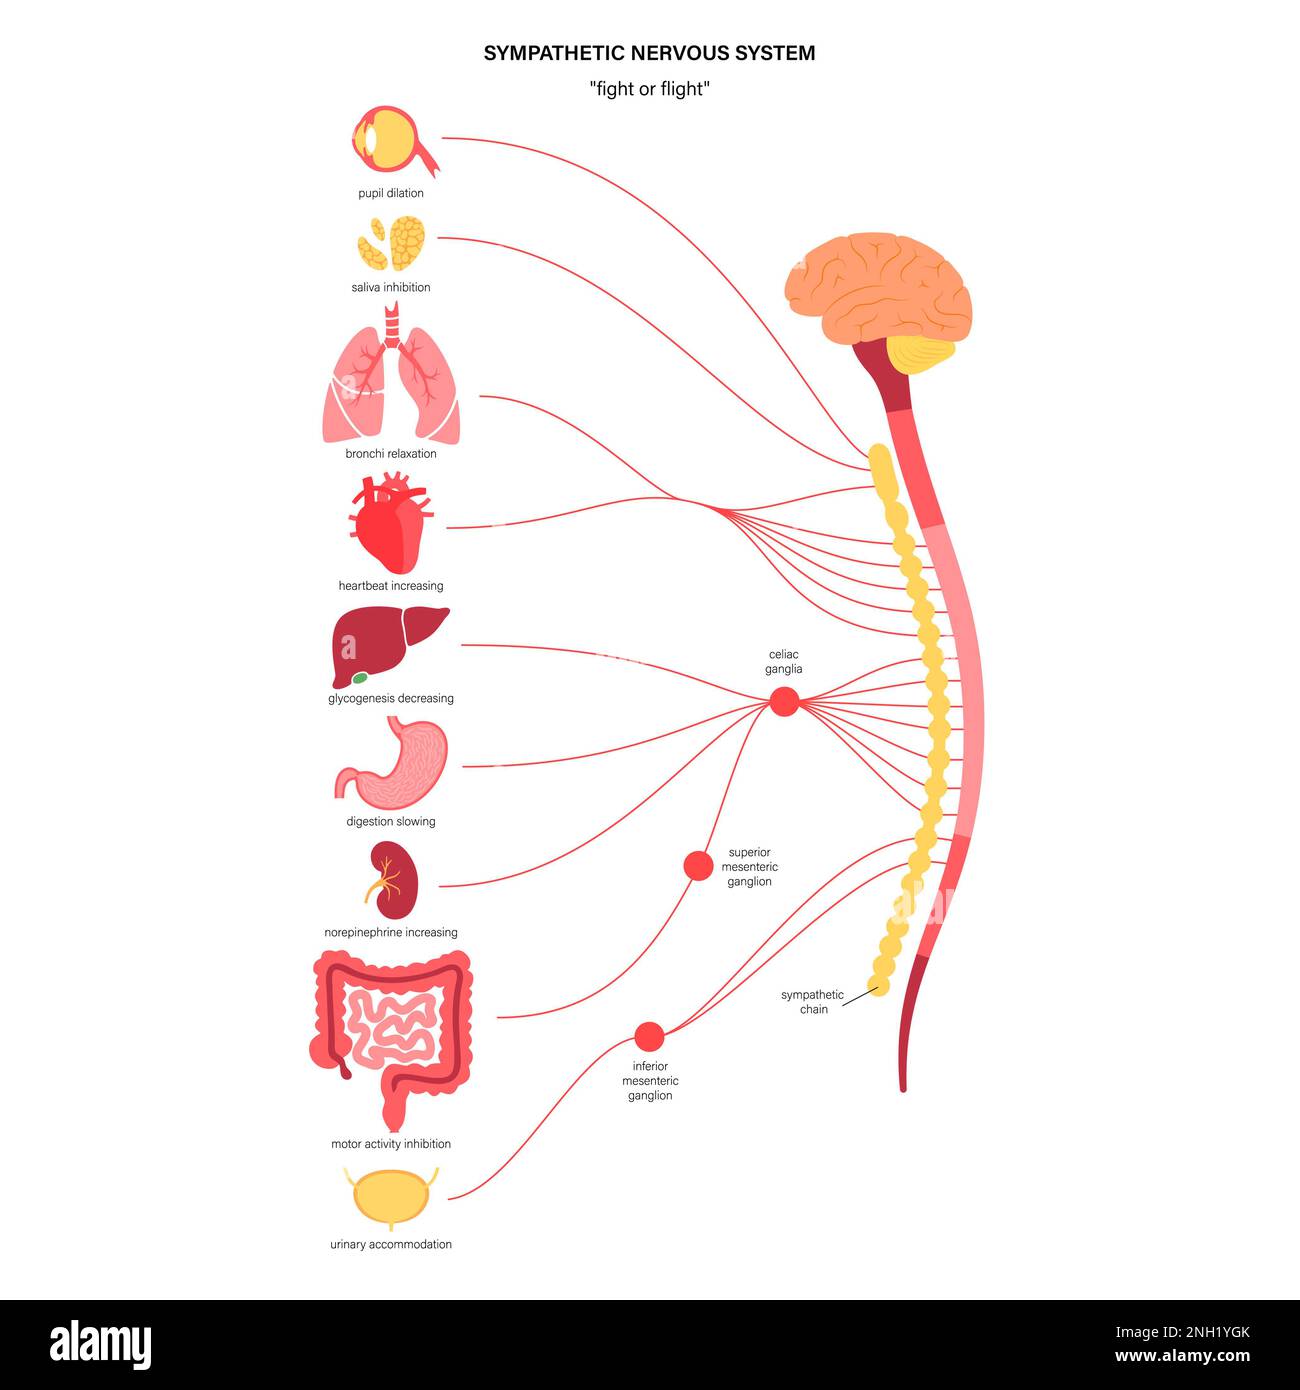 Sympathetic nervous system, illustration Stock Photo - Alamy